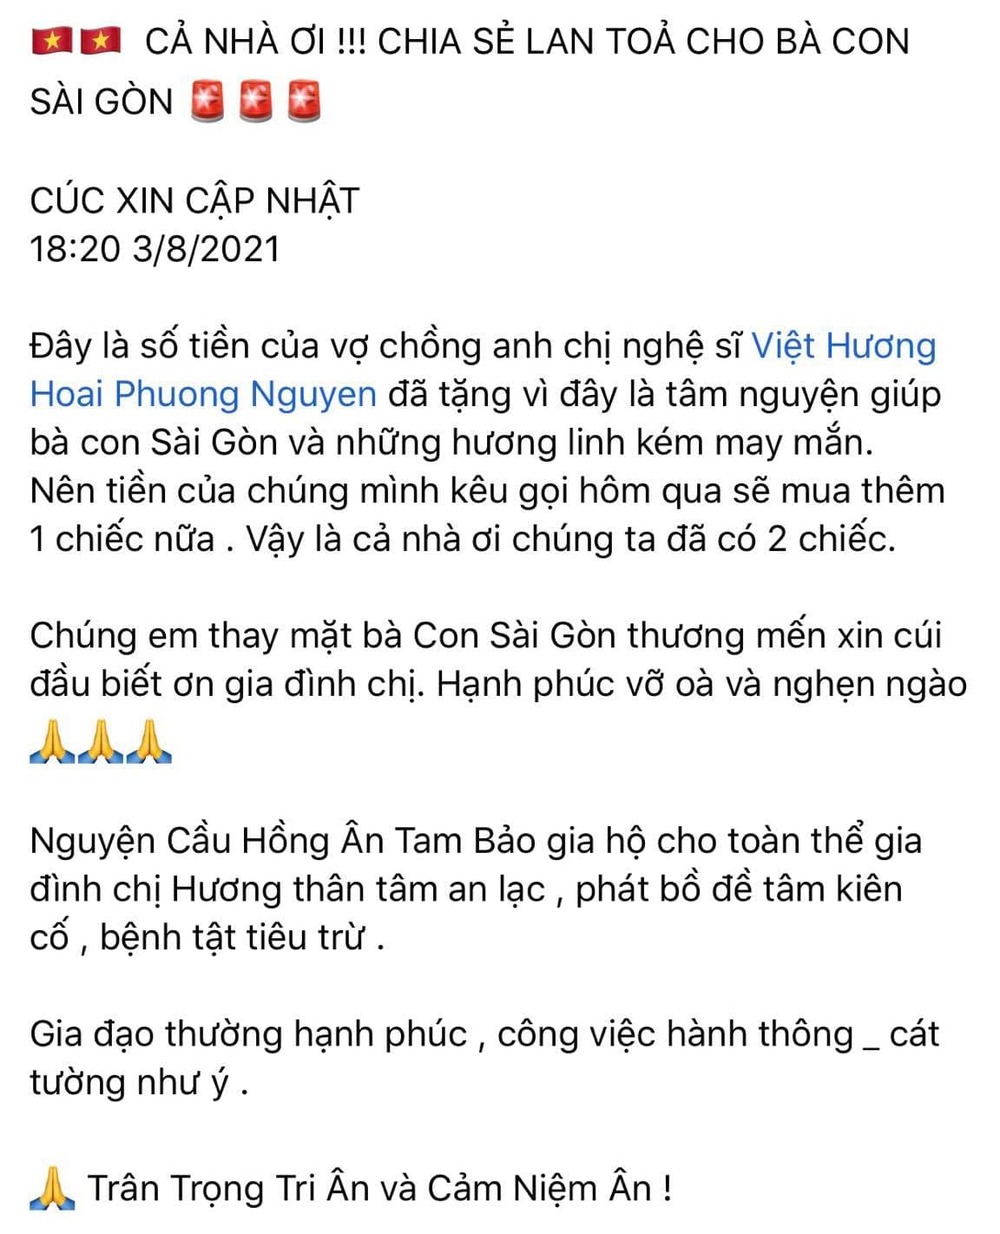  
Nhóm từ thiện gửi lời cảm ơn đến tấm lòng của vợ chồng Việt Hương. (Ảnh: Chụp màn hình)